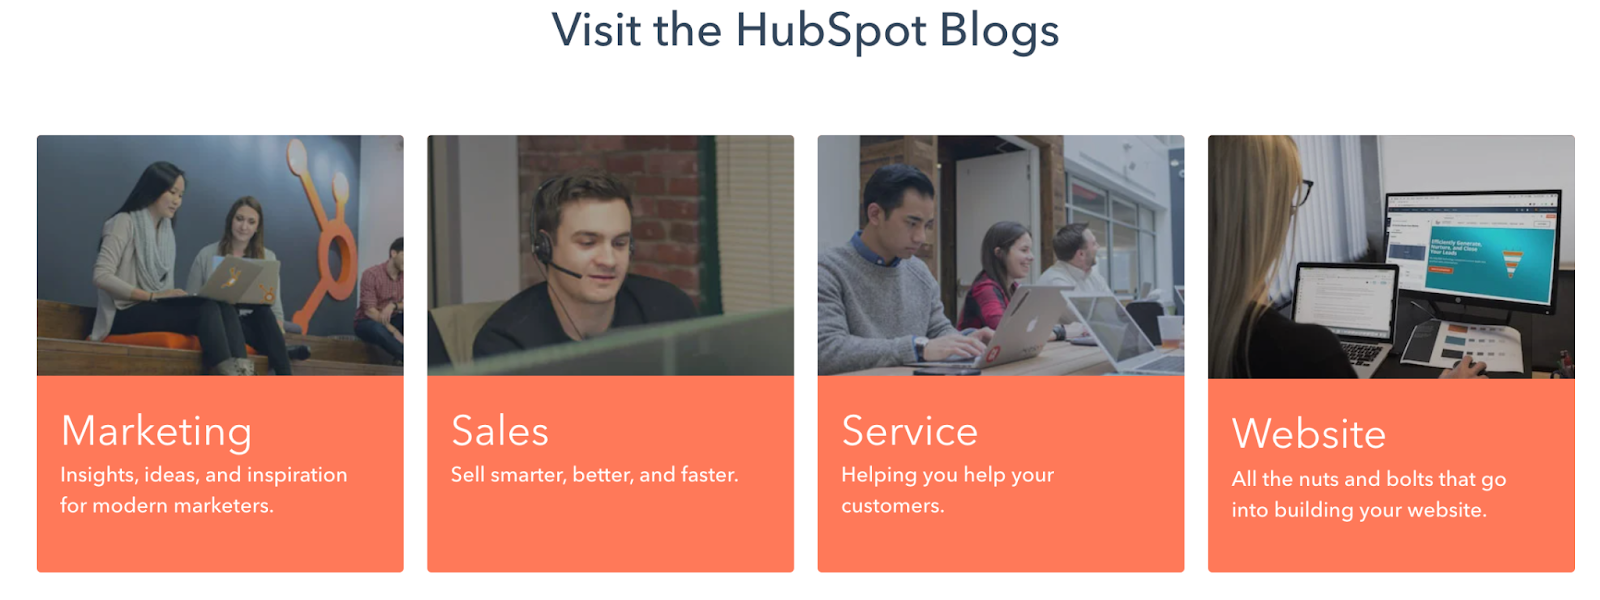 Hubspot blog pillar pages